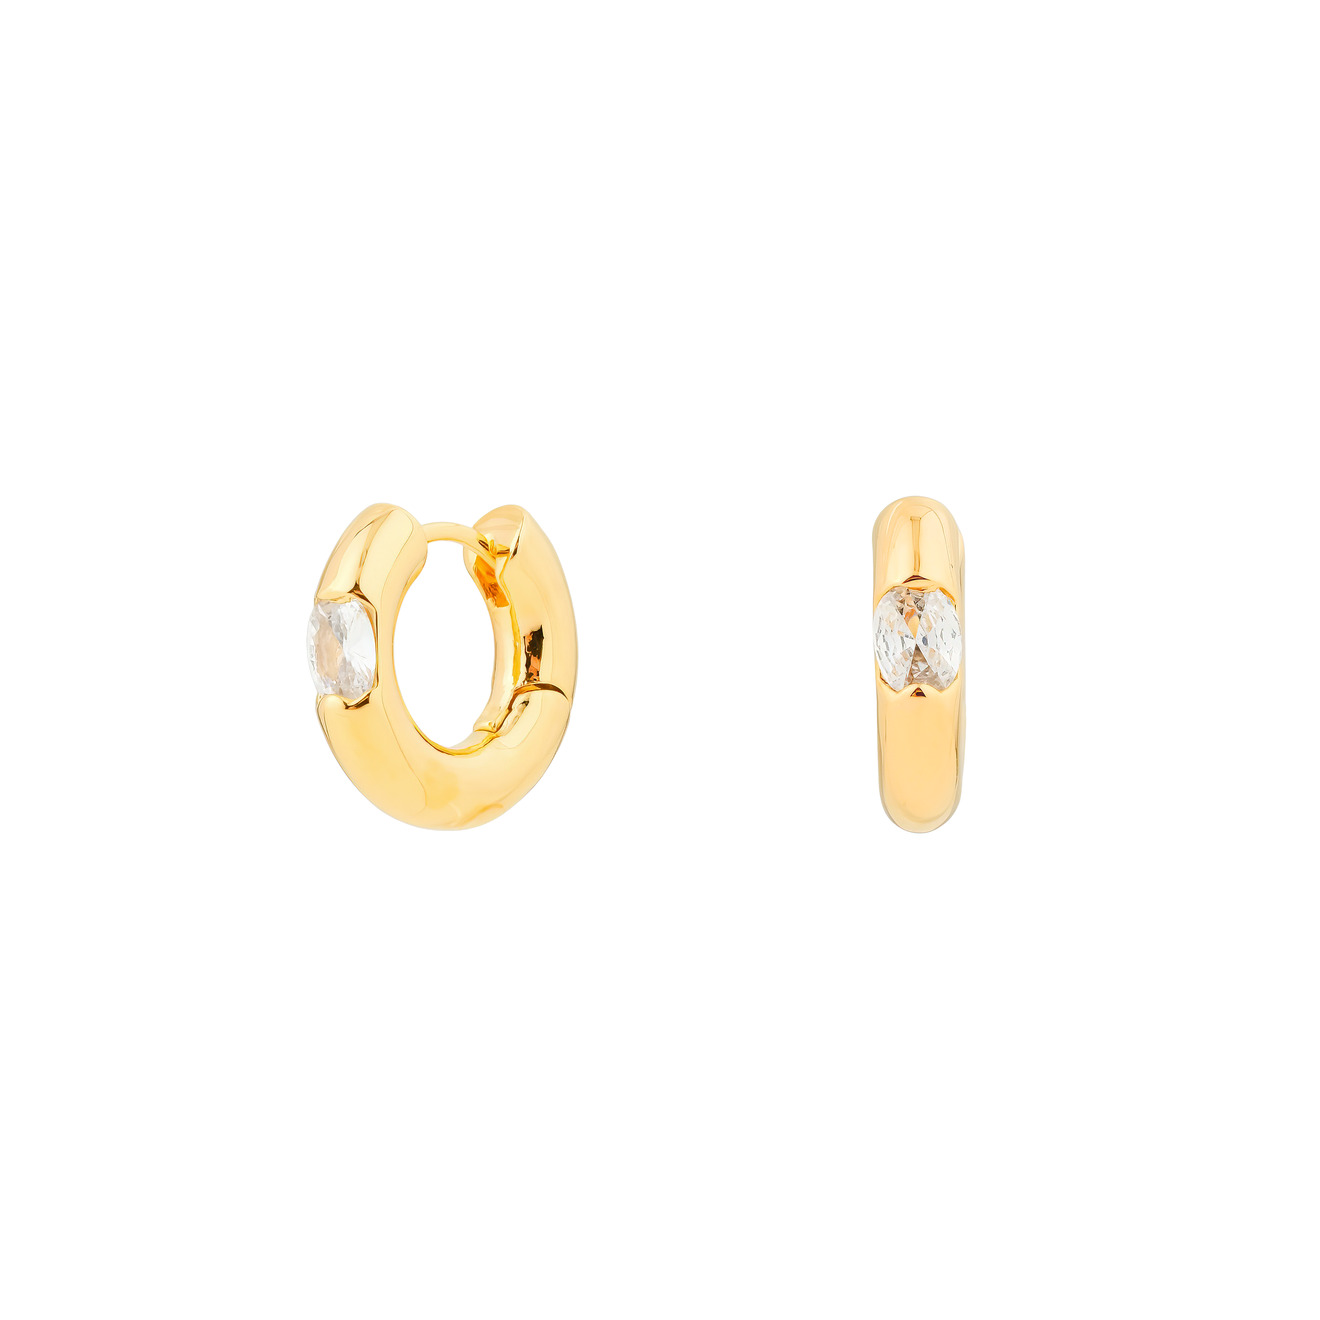 Herald Percy Золотистые дутые серьги-кольца с овальными кристаллами herald percy золотистые длинные серьги бантики с кристаллами